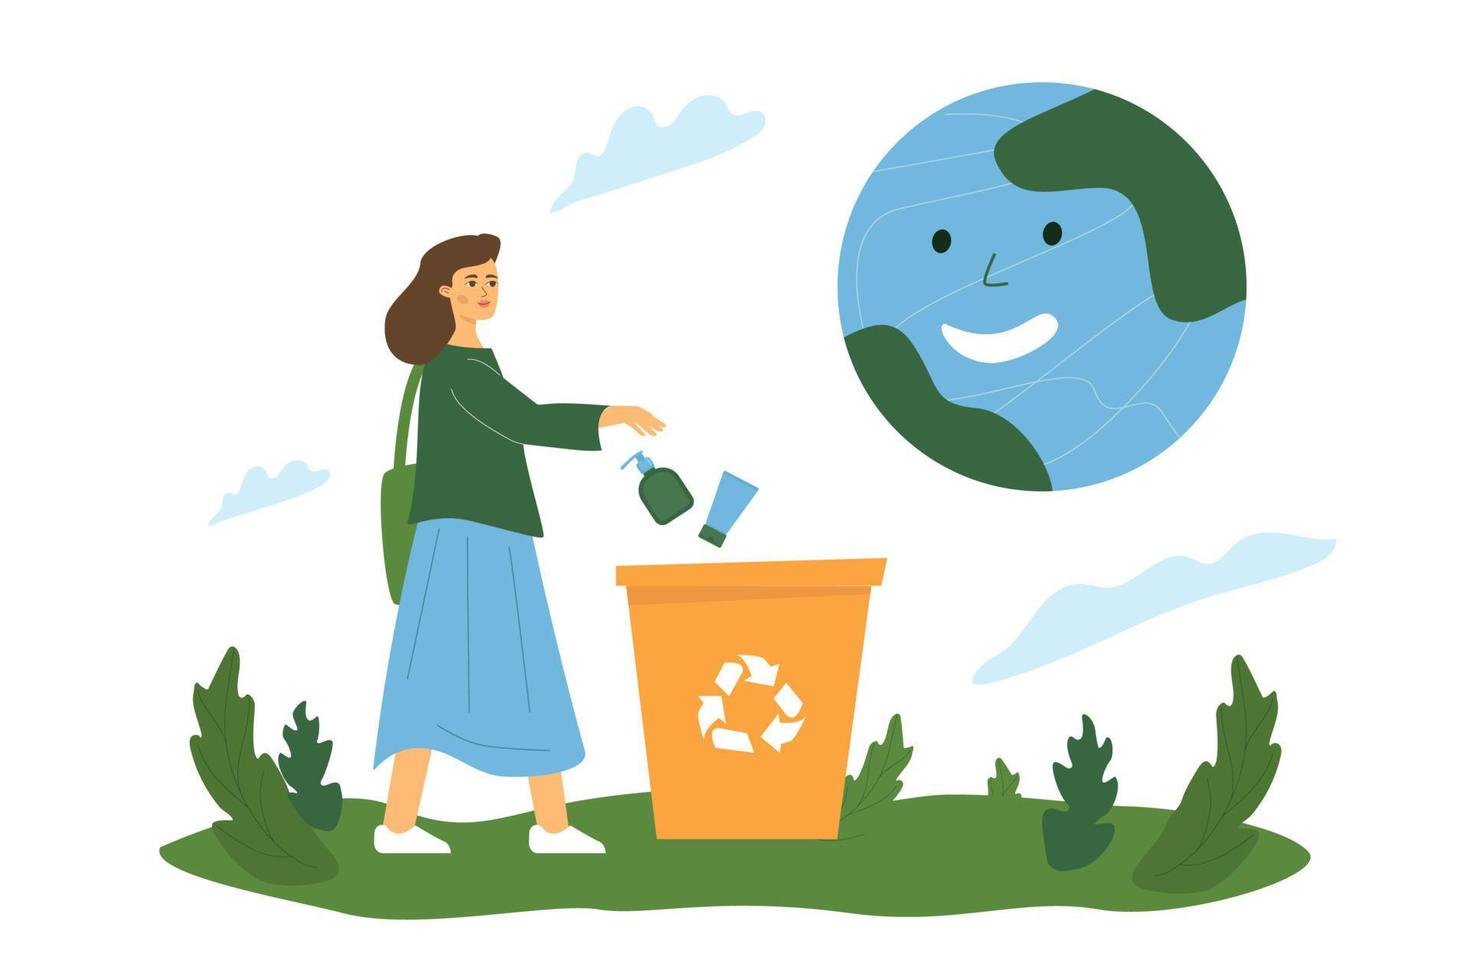 Ein Mädchen wirft Plastikflaschen in einen Müllcontainer, ein lächelnder Planet über ihr, eine Metapher für die Nützlichkeit des Recyclings von Plastik. vektor